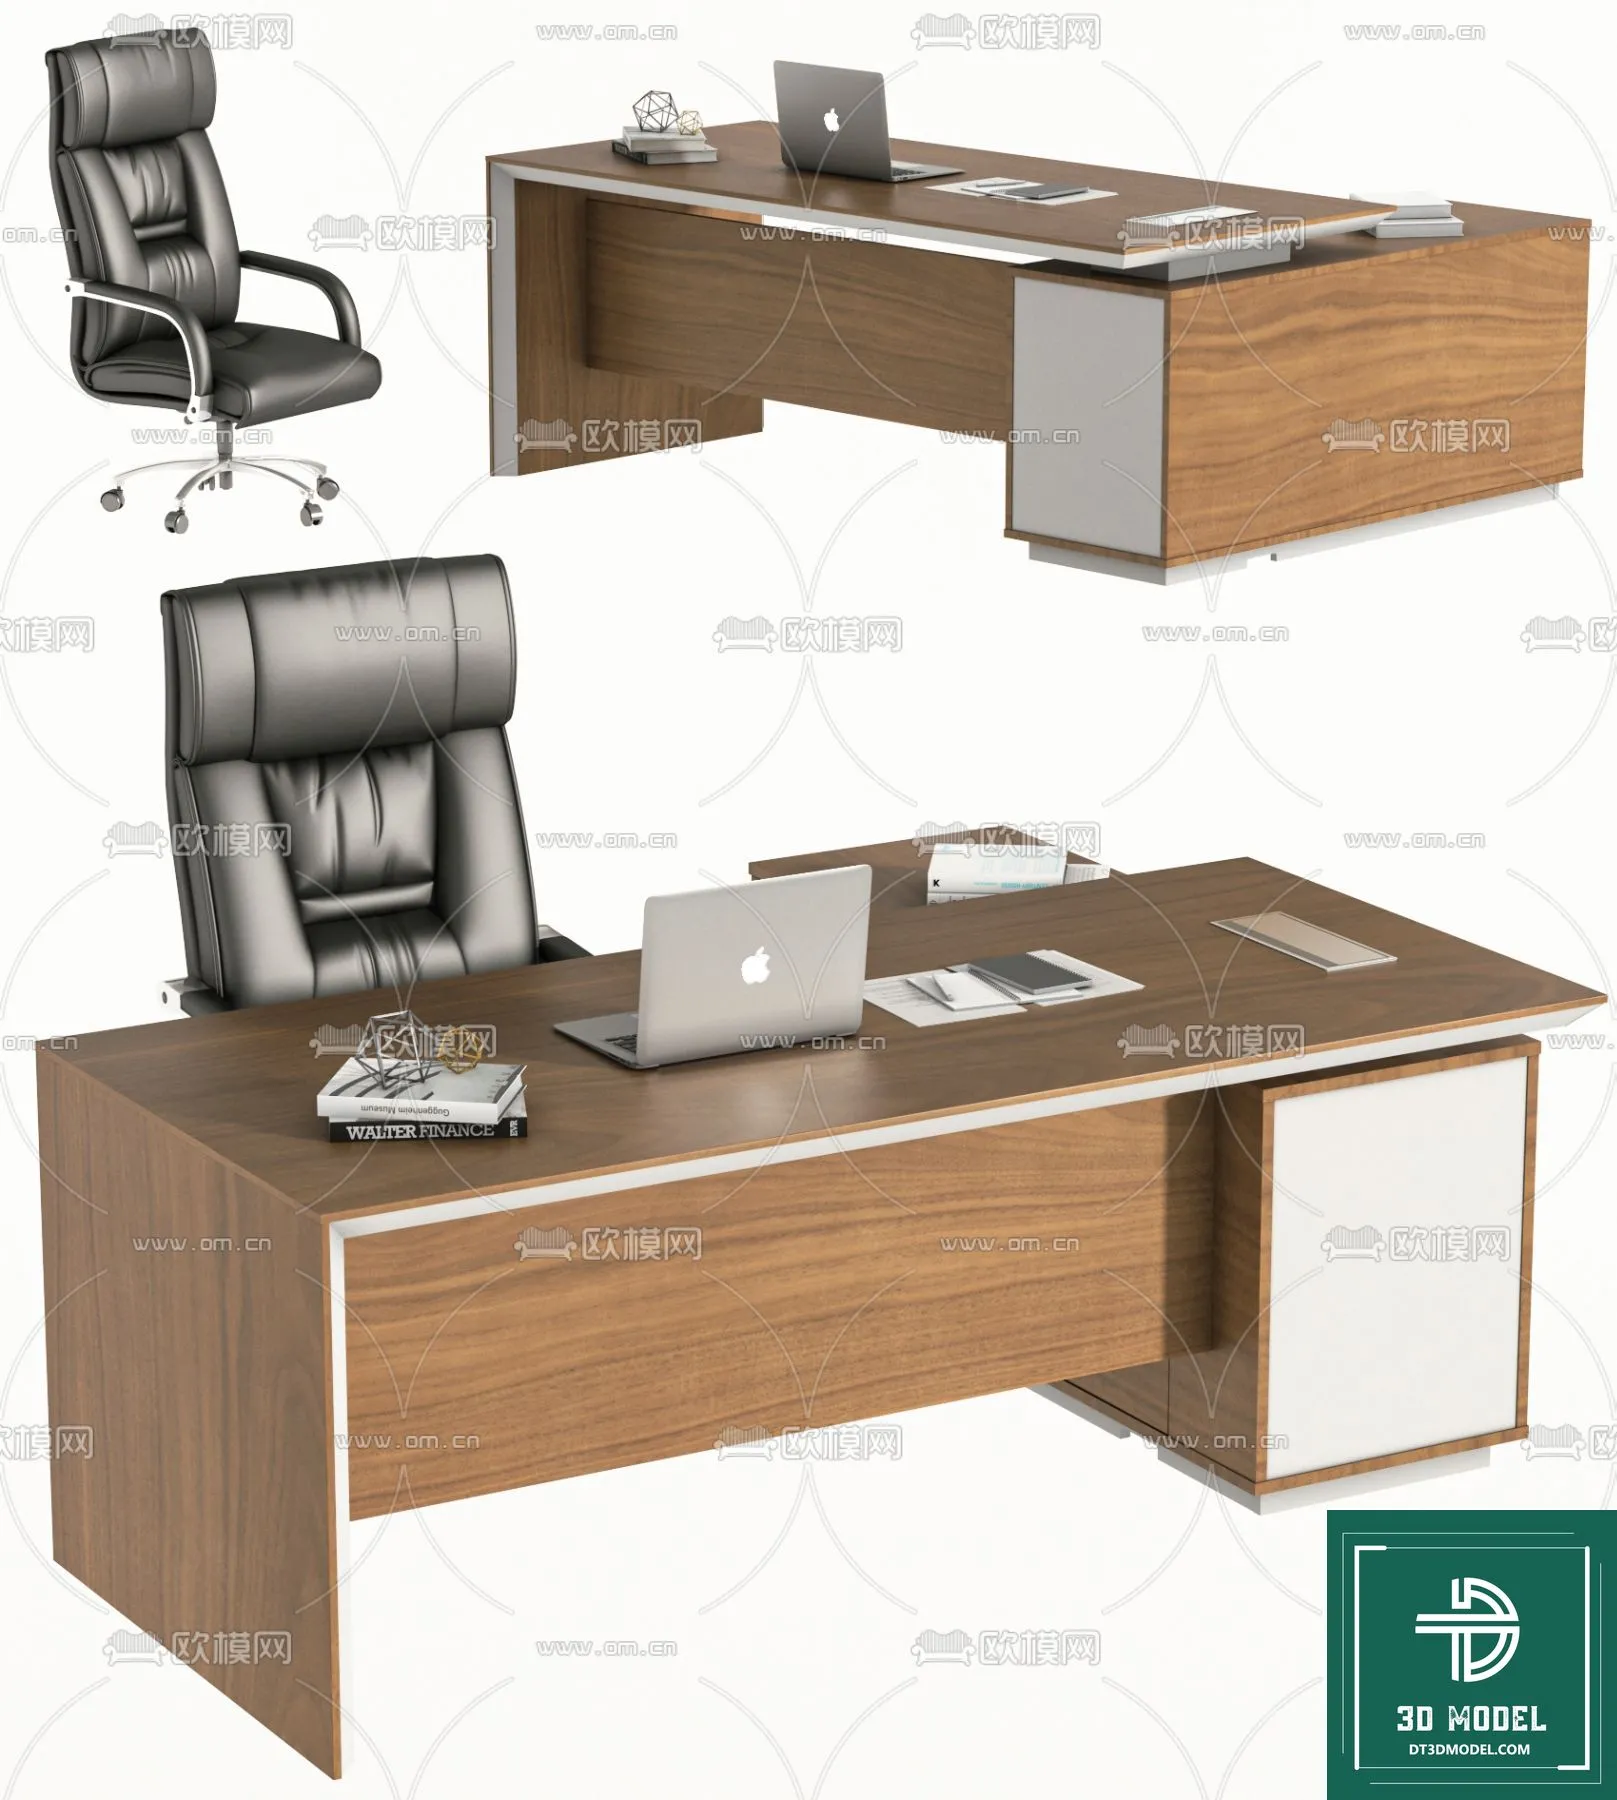 OFFICE TABLES – DESK 3DMODELS – 070